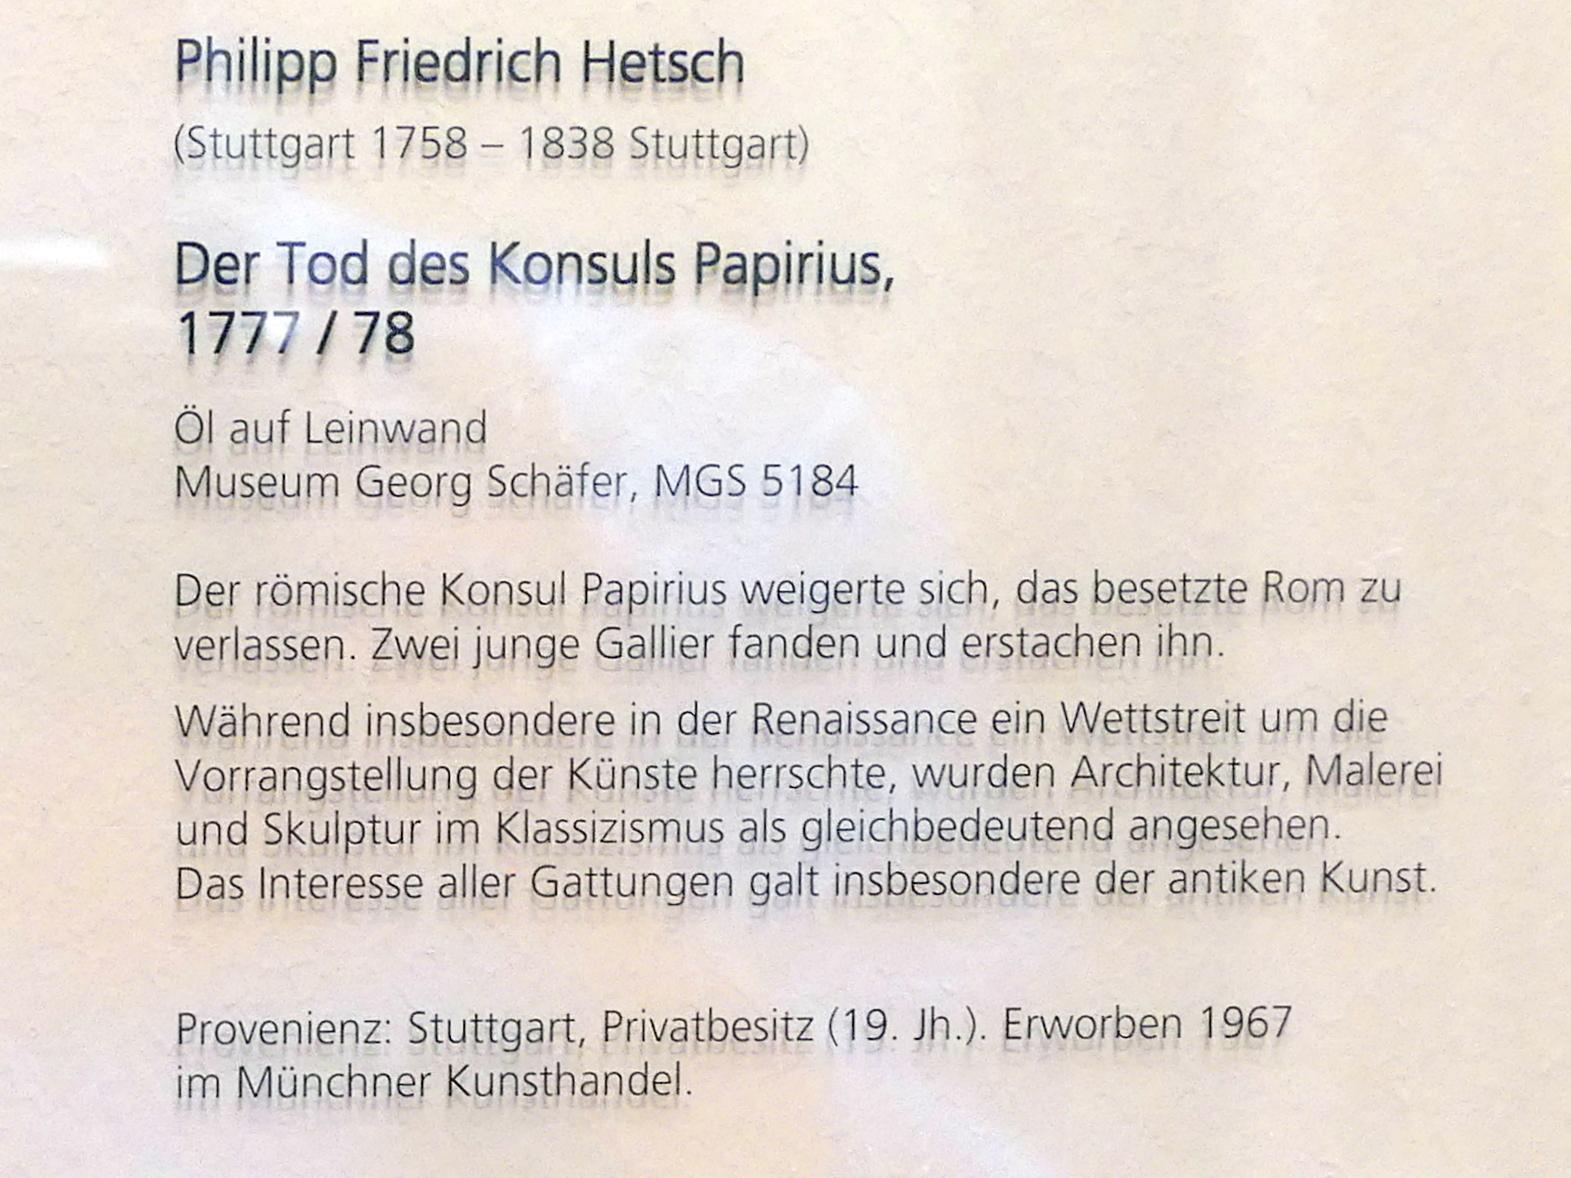 Philipp Friedrich Hetsch (1777–1808), Der Tod des Konsuls Papirius, Schweinfurt, Museum Georg Schäfer, Saal 10, um 1777–1778, Bild 2/8